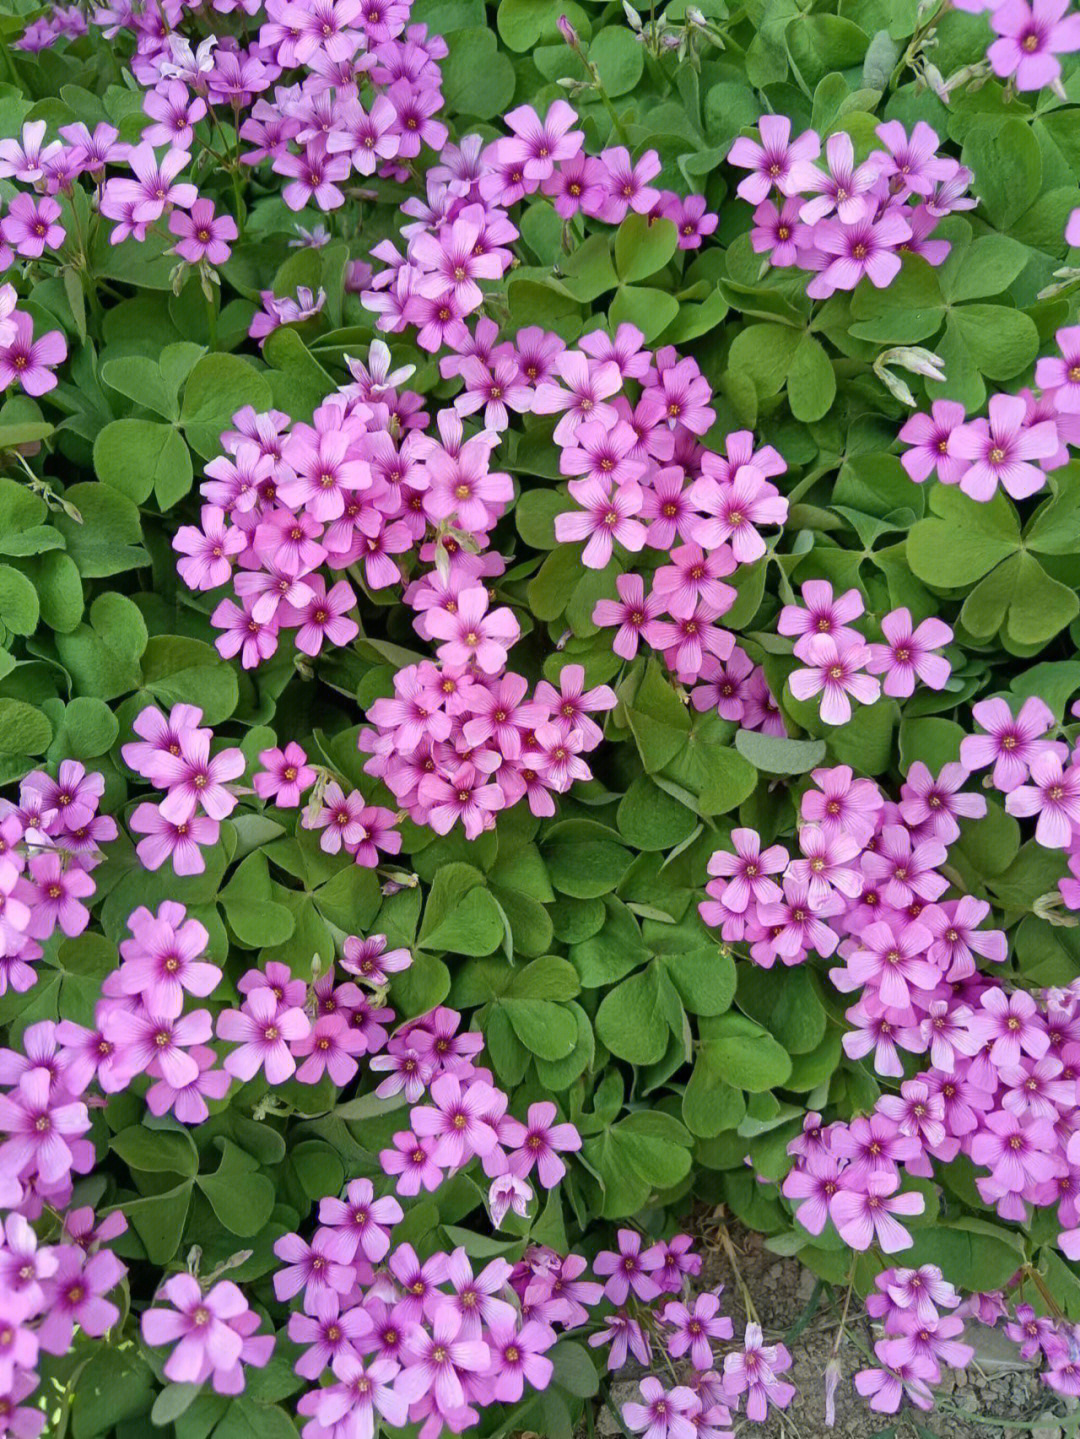 烂漫可爱的粉色小花,夏日里很常见,大多都叫不出它的名字,我们叫它